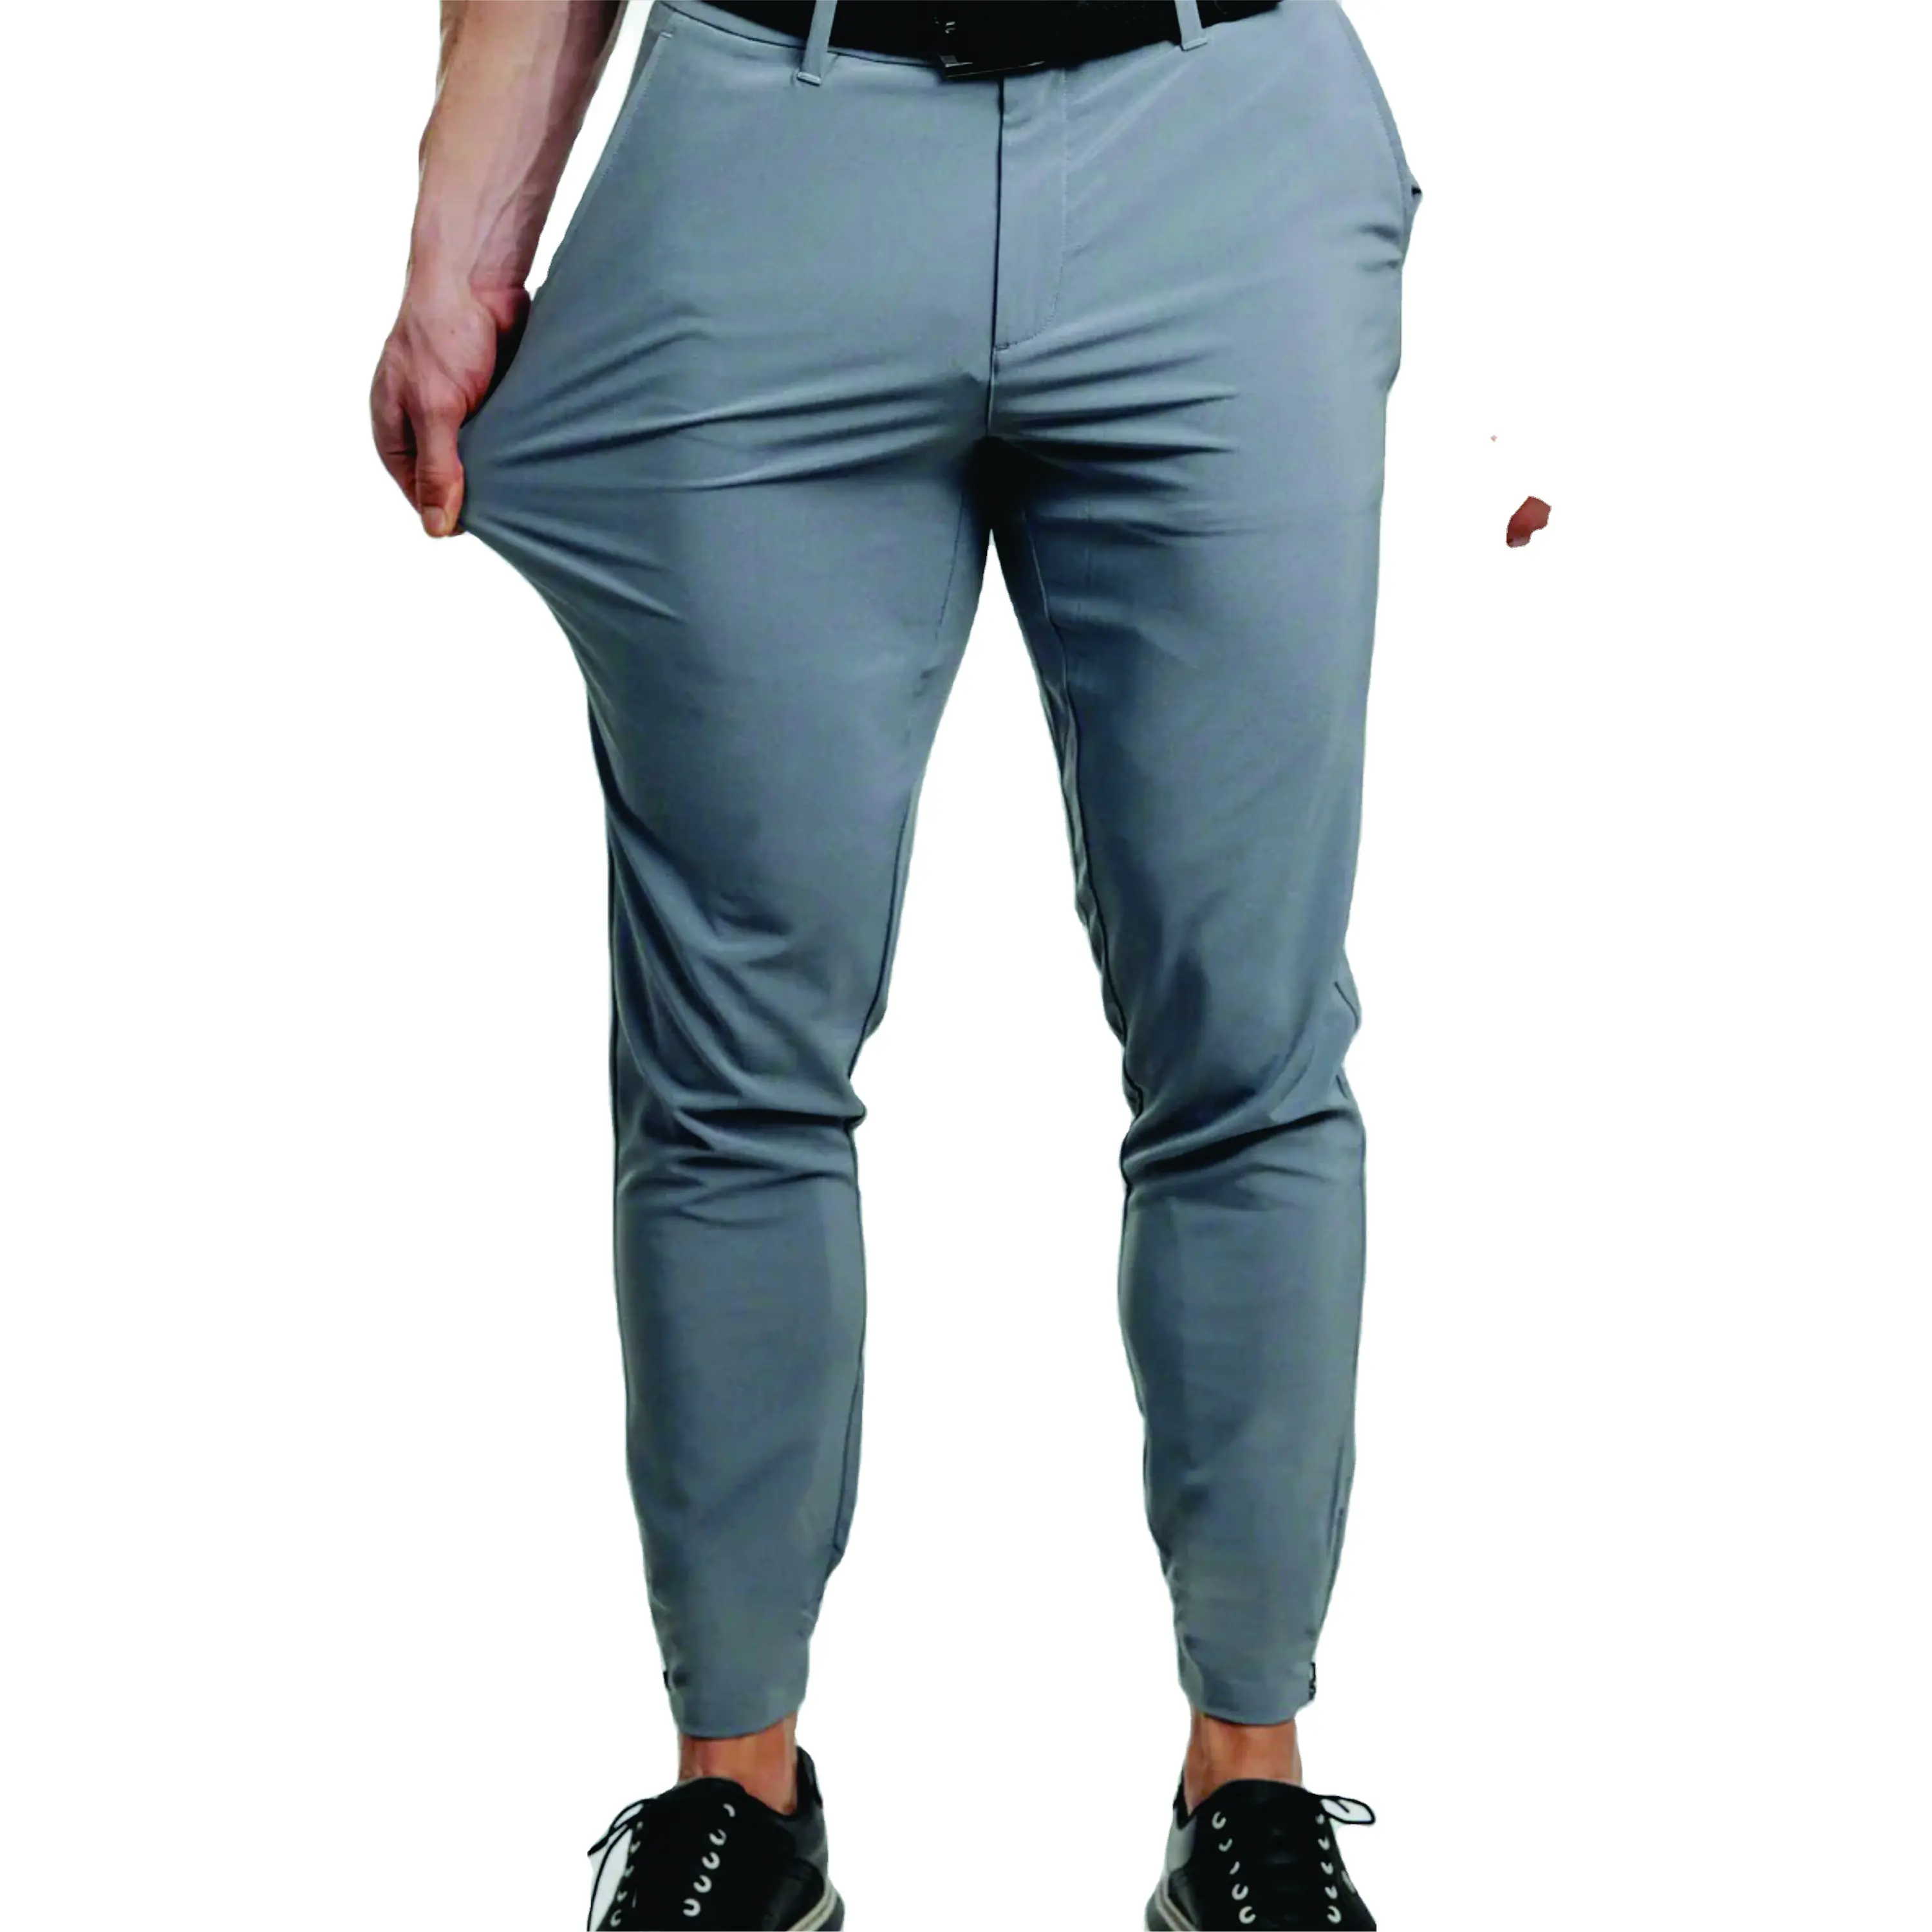 OEM özel üretici yüksek kalite erkekler Golf pantolon bahar giyim açık Golf oyunu spor takım giyim satılık